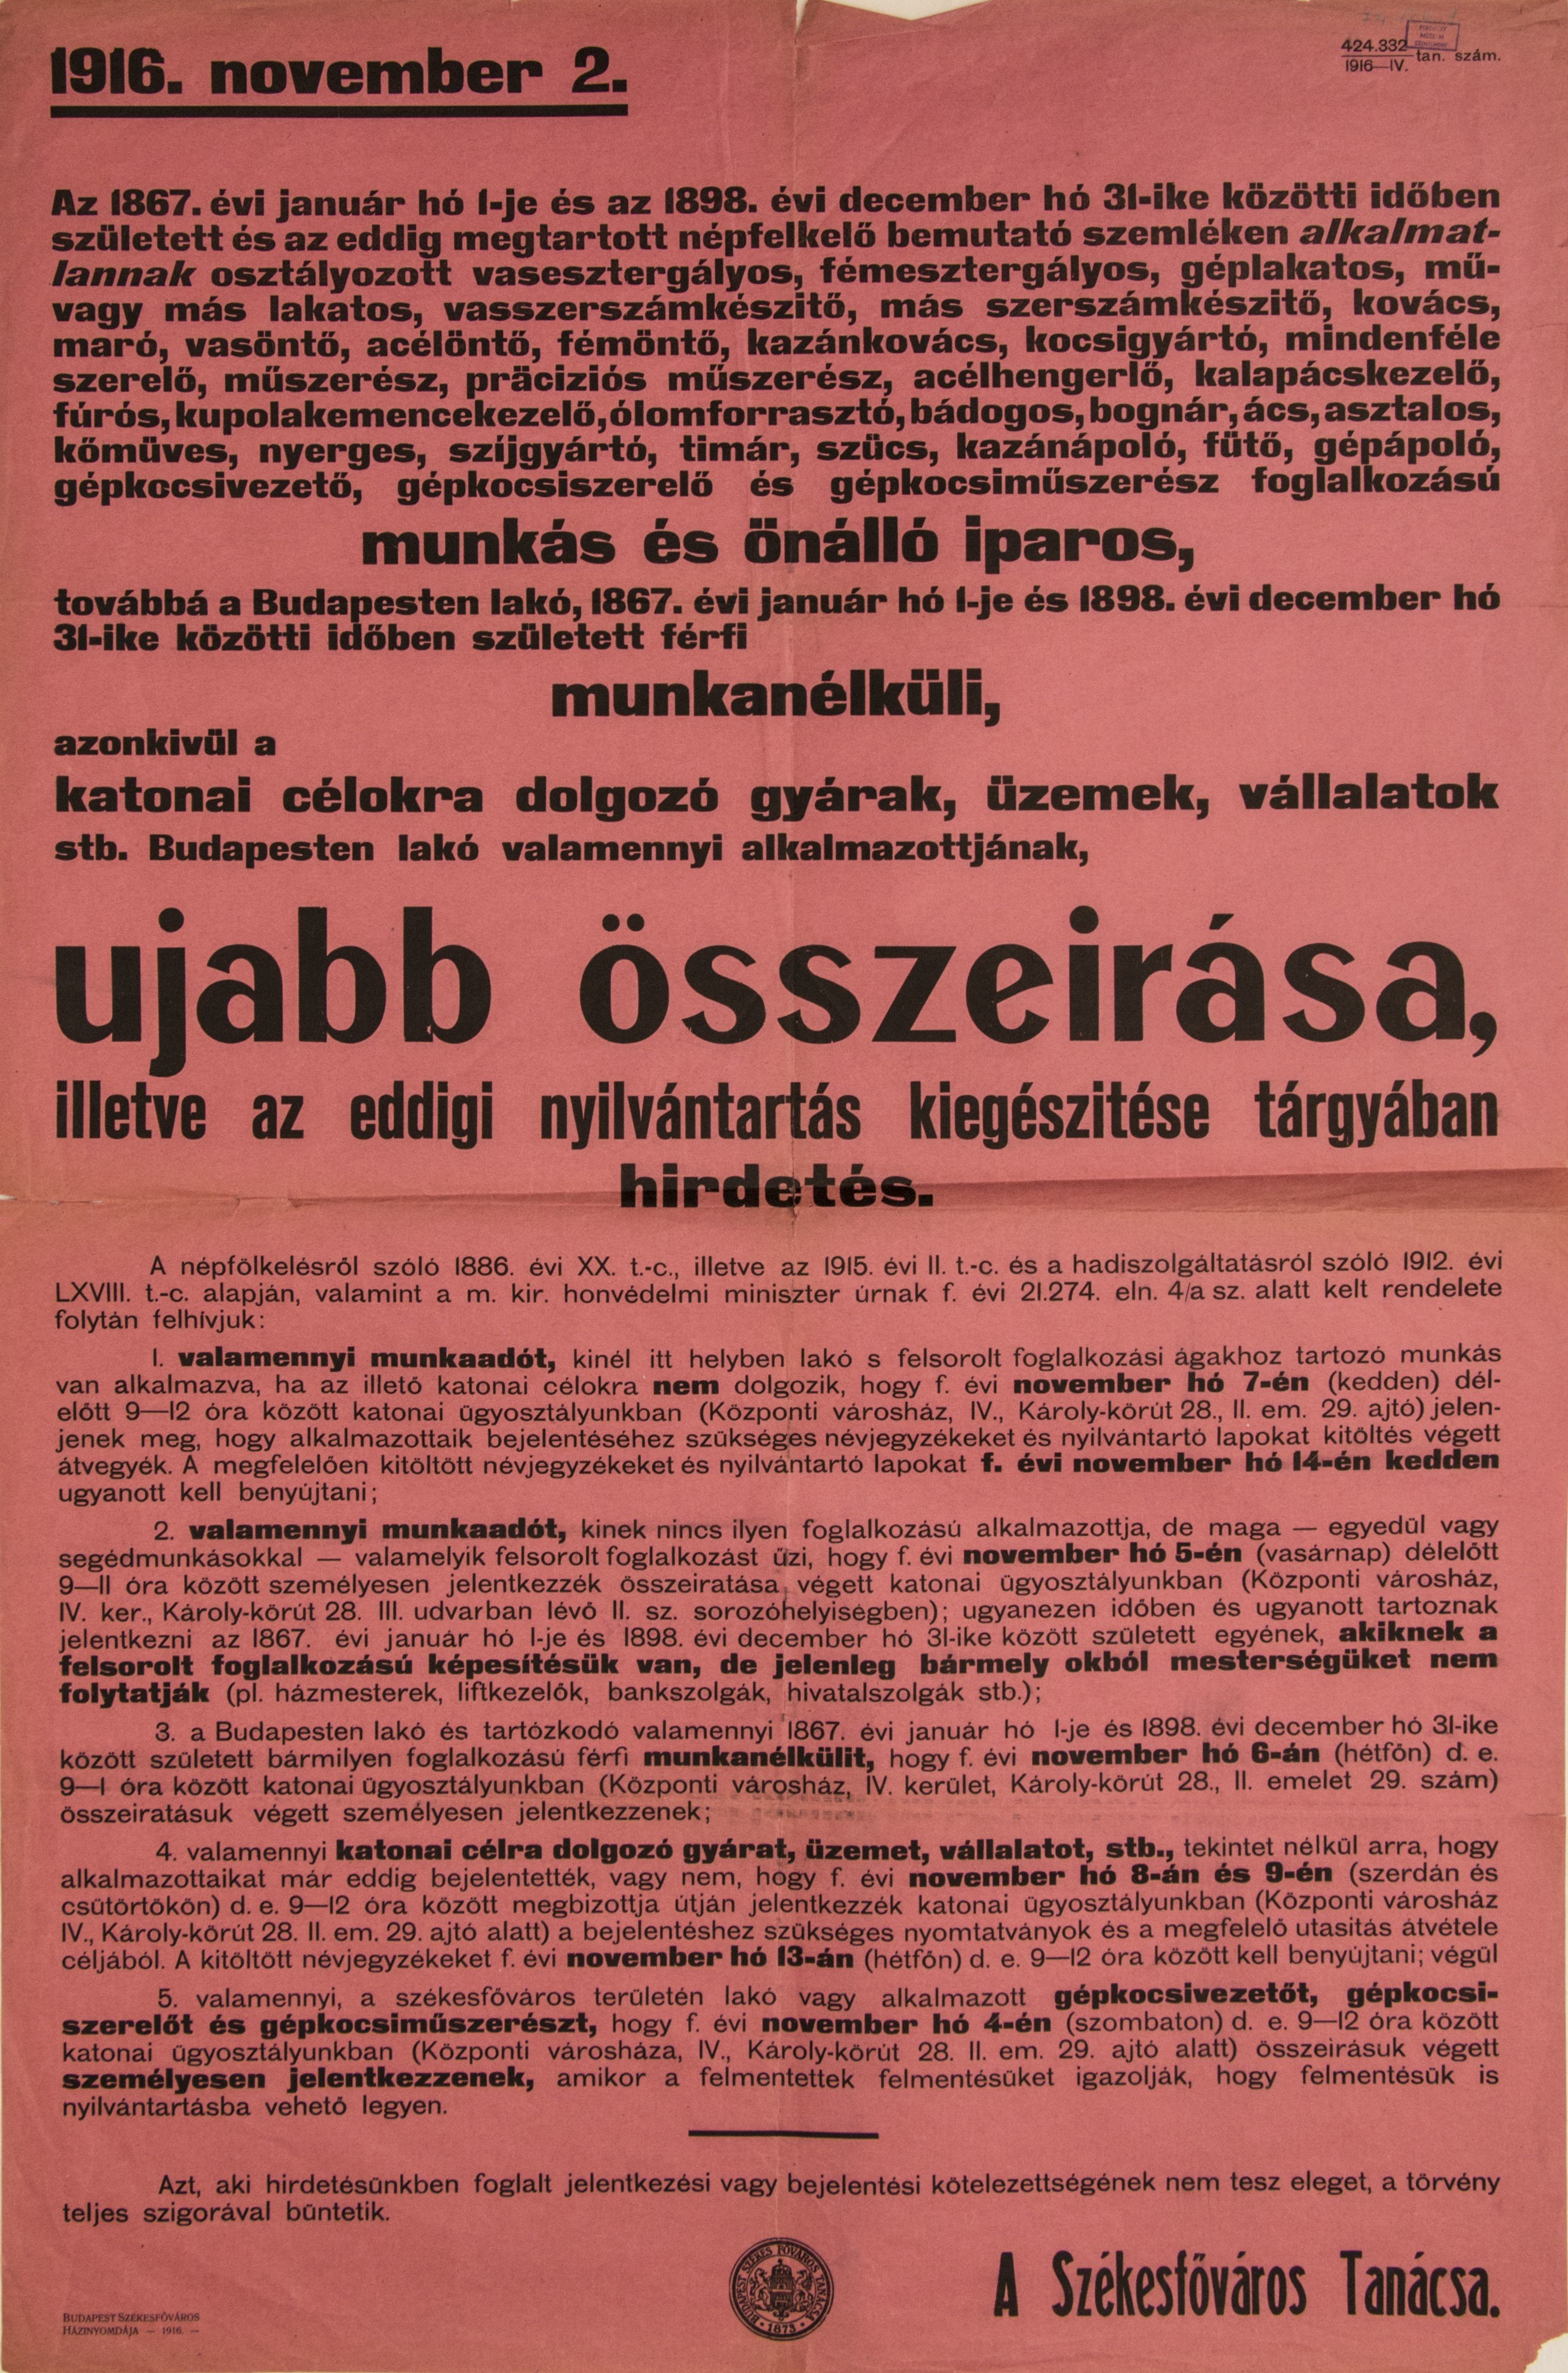 Munkás, iparos, munkanélküli, katonai célra dolgozó gyár, vállalat összeírása ügyében hirdetés, 1916.11.02. (Ferenczy Múzeumi Centrum CC BY-NC-SA)